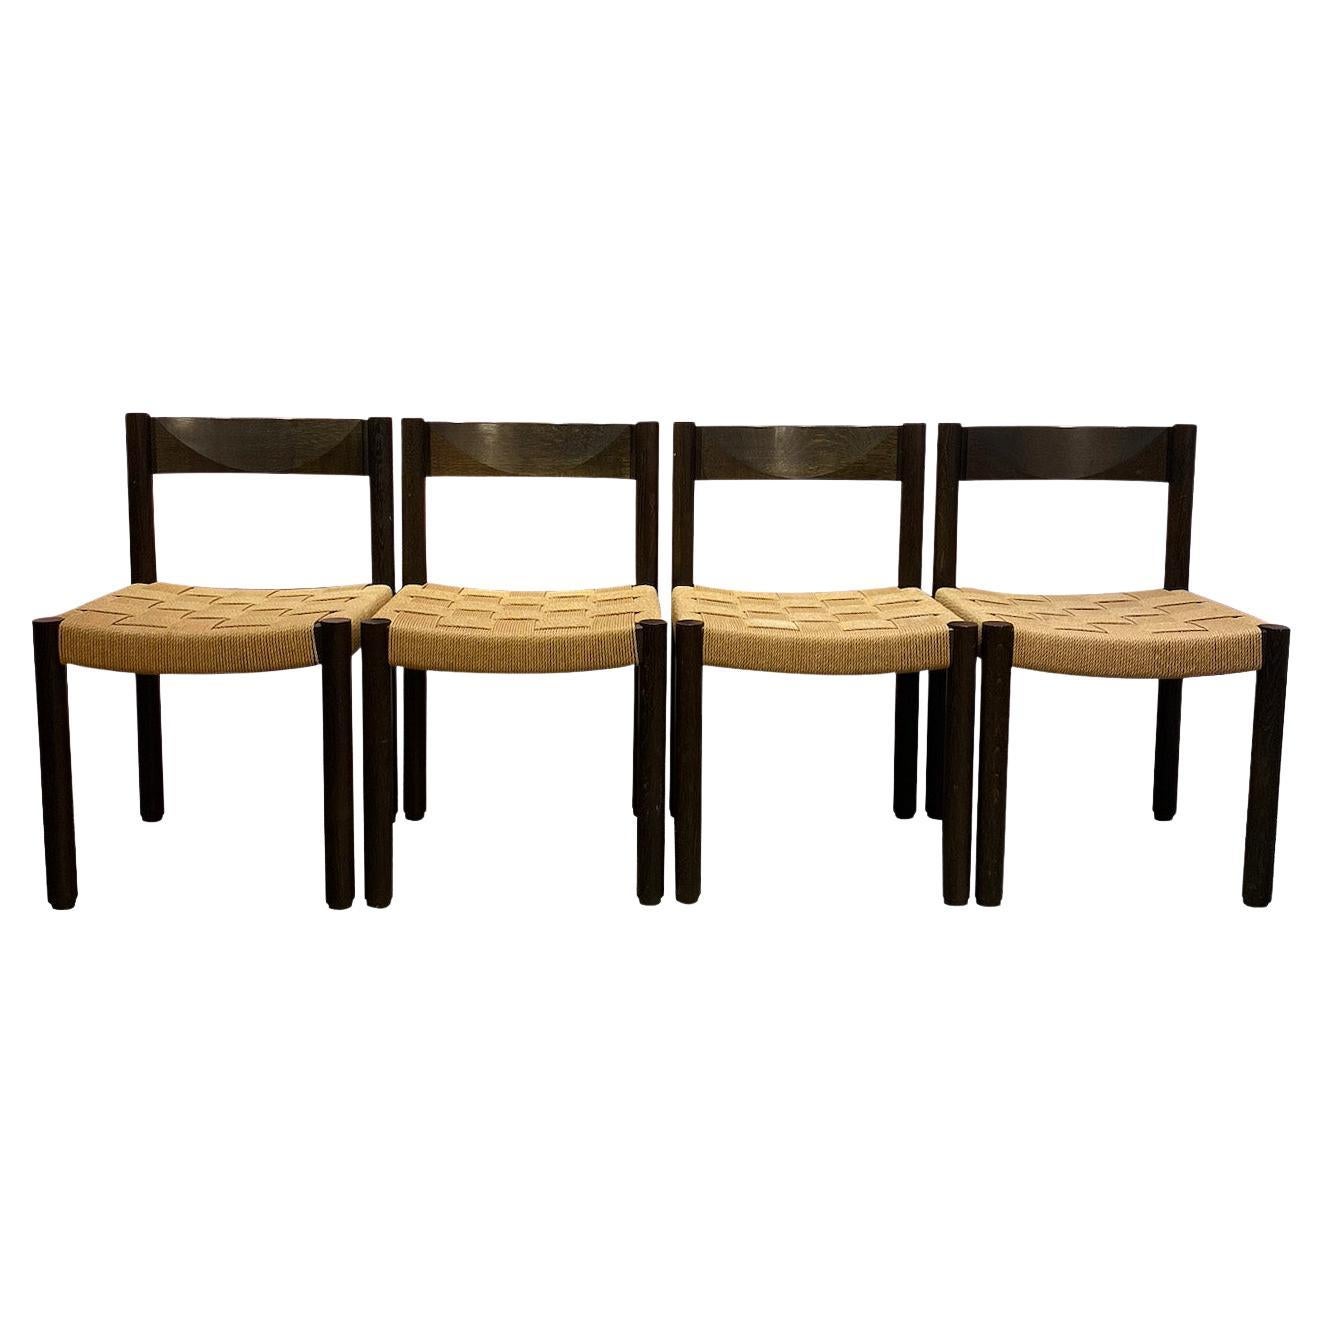 Satz von 4 Holzstühlen,  Circa 1960. 
Entworfen vom Schweizer Designer Robert Haussmann  für Dietiker. 

Struktur aus gebeizter Eiche, Sitz aus handgeflochtenem Seil. Guter Zustand. 

